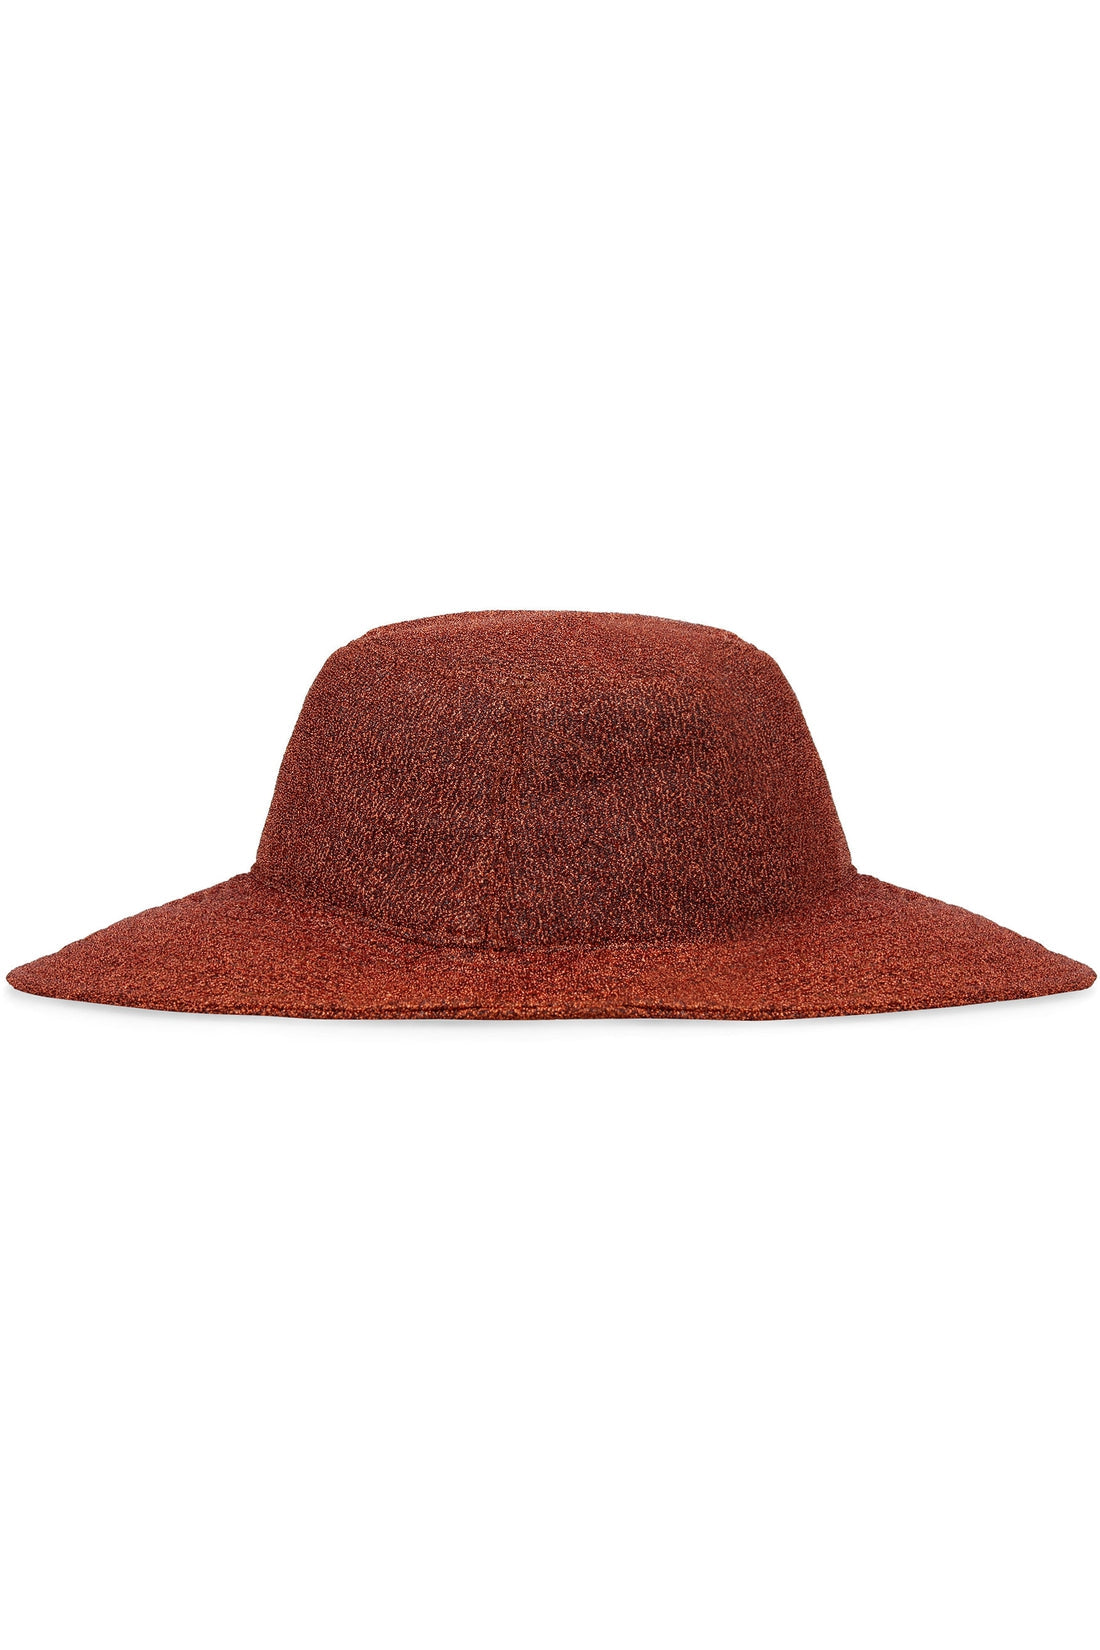 Oséree-OUTLET-SALE-Lumière beach hat-ARCHIVIST